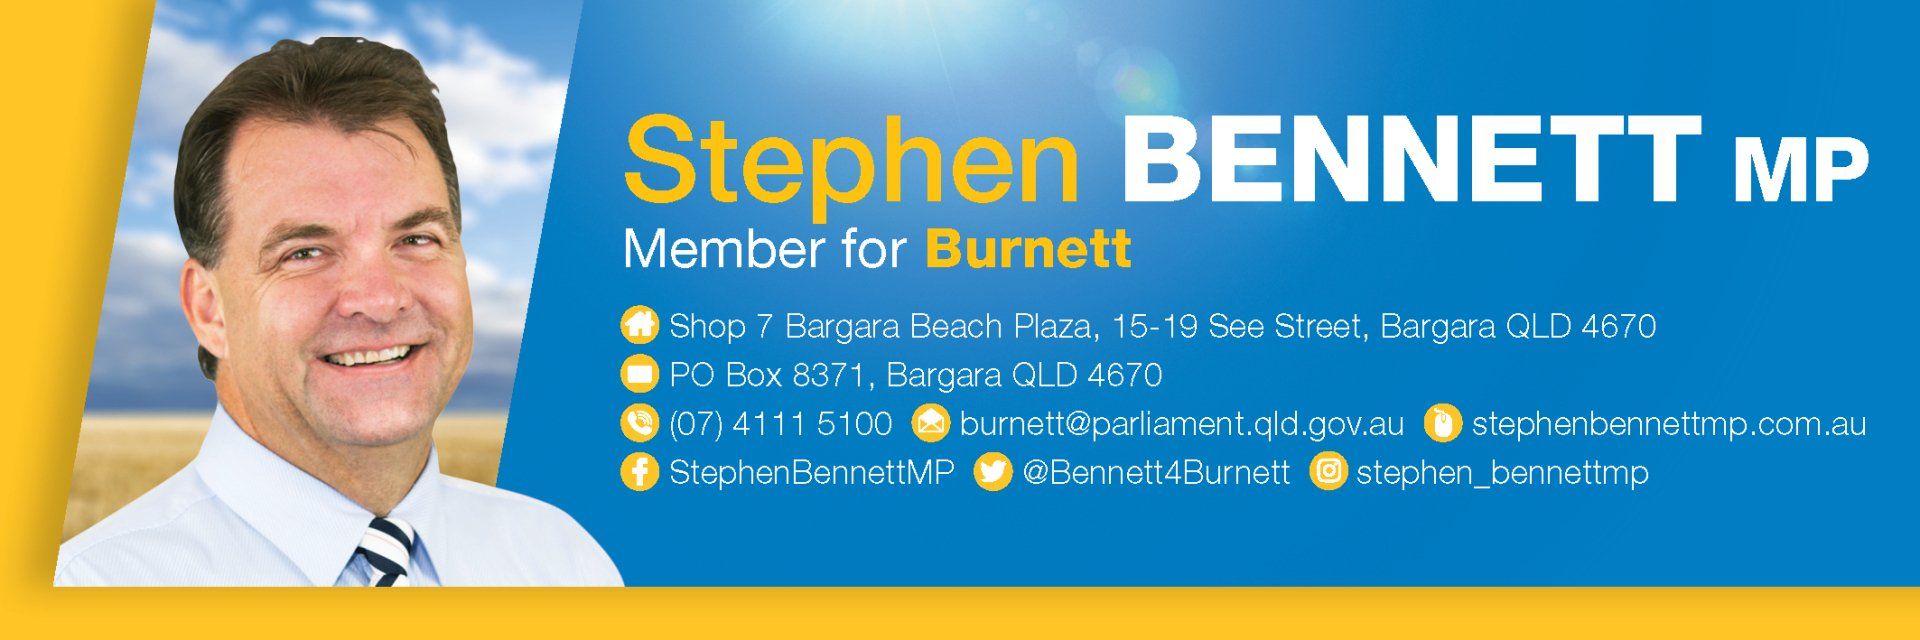 Stephen Bennett MP